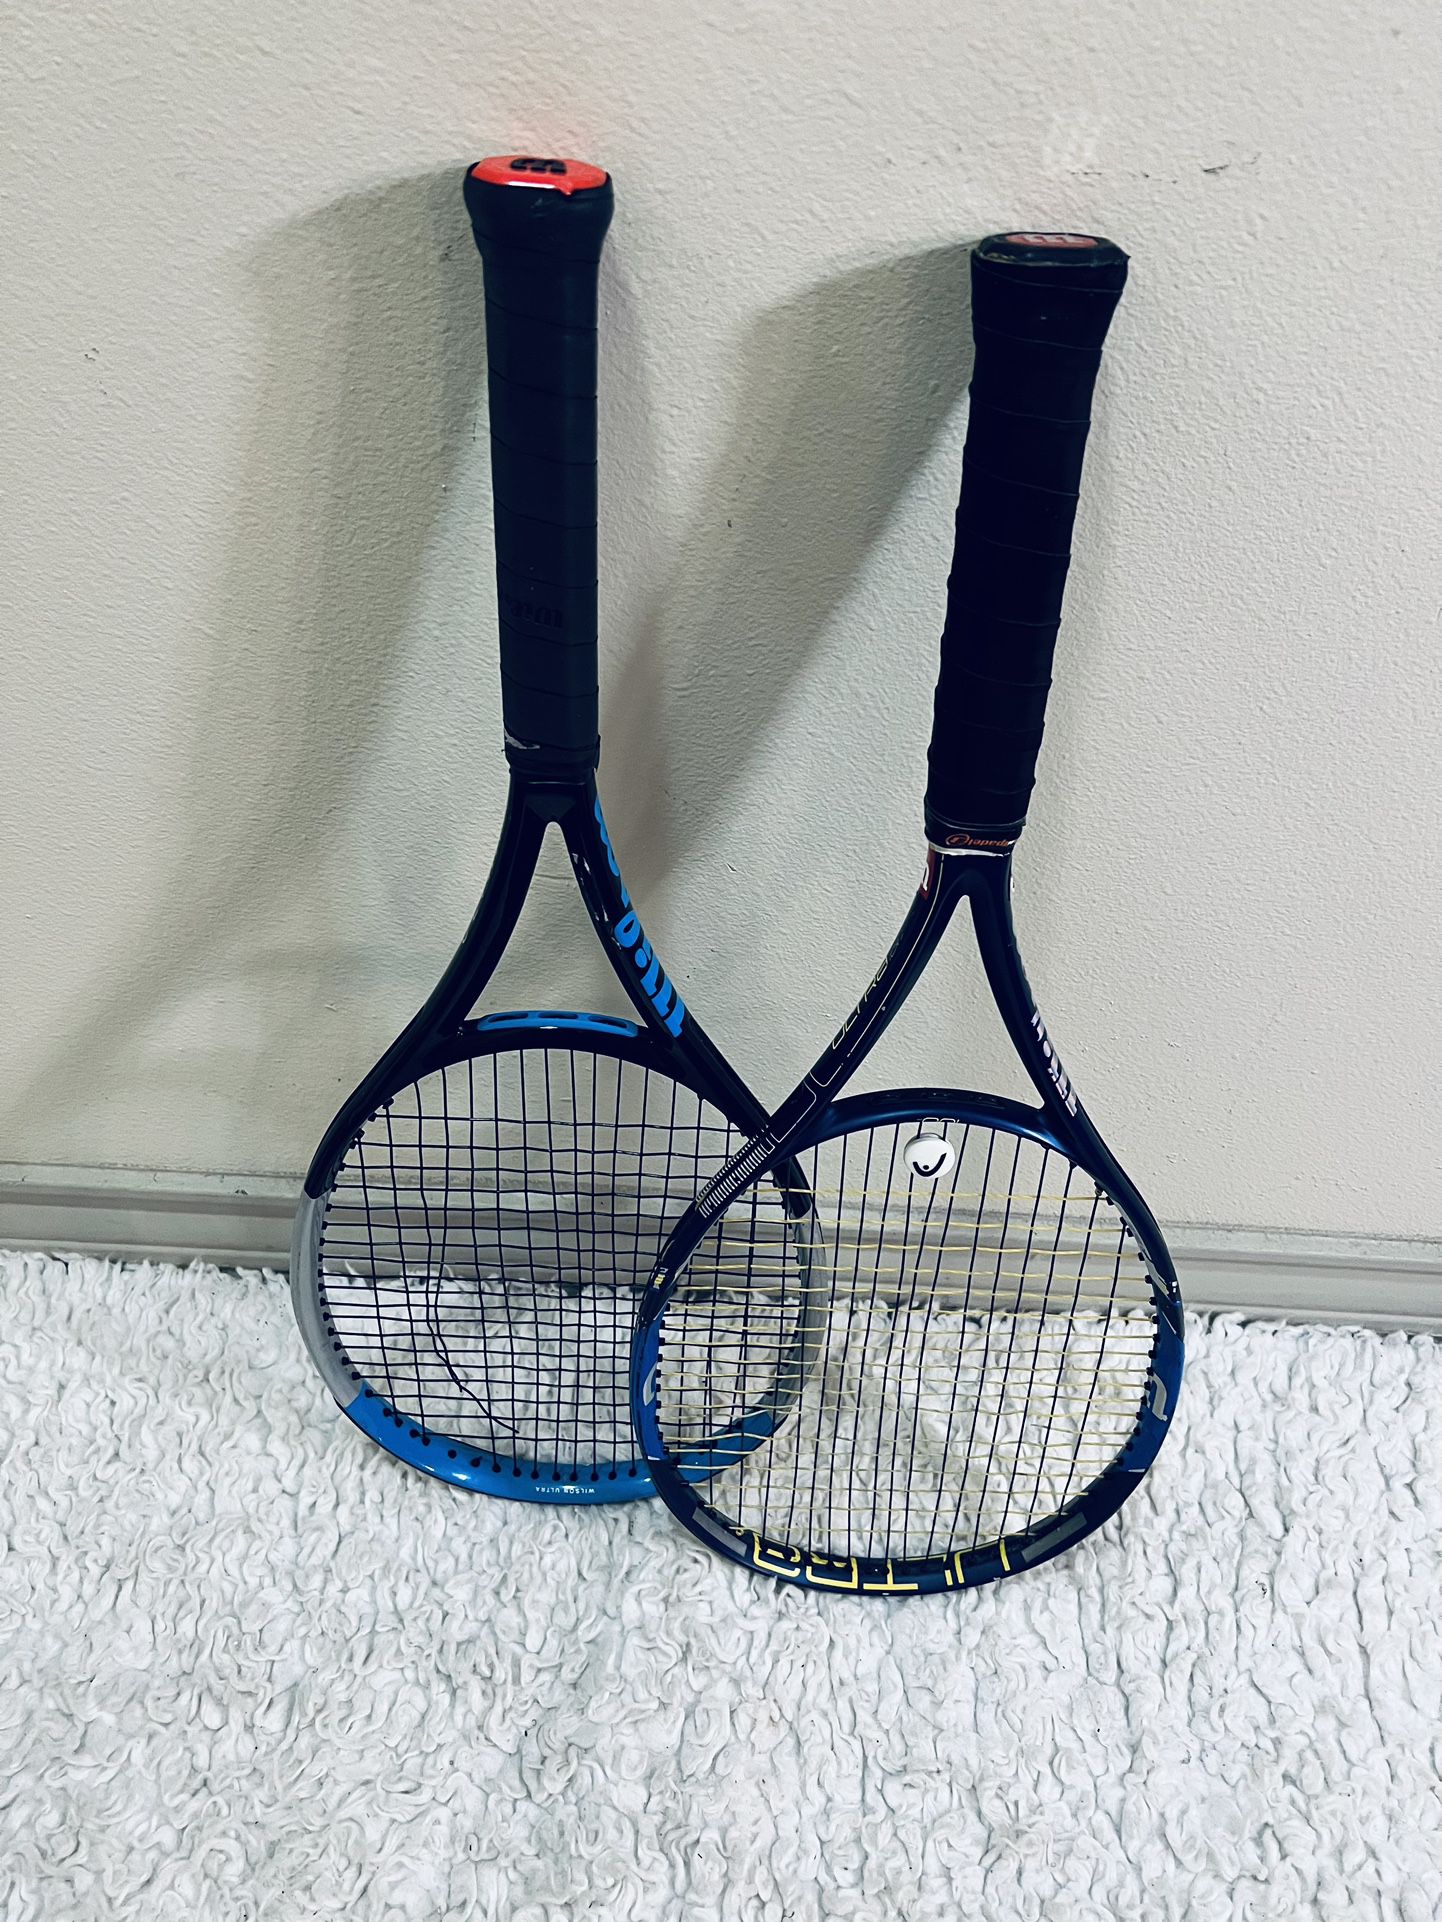 Wilson Ultra Tennis Rackets